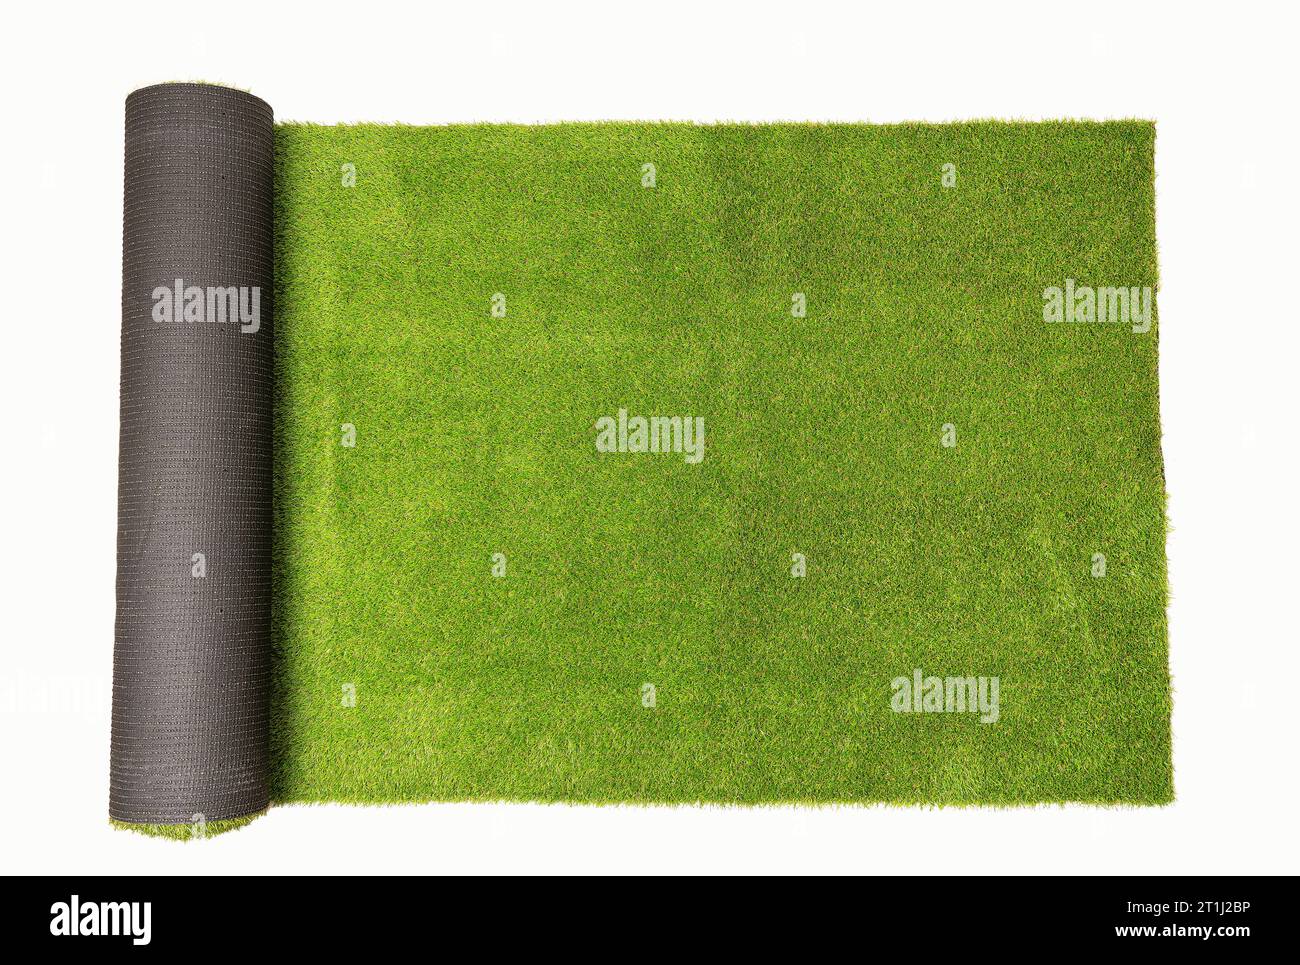 Draufsicht auf künstlich gerolltes grünes Gras, isoliert auf weißem Hintergrund Stockfoto